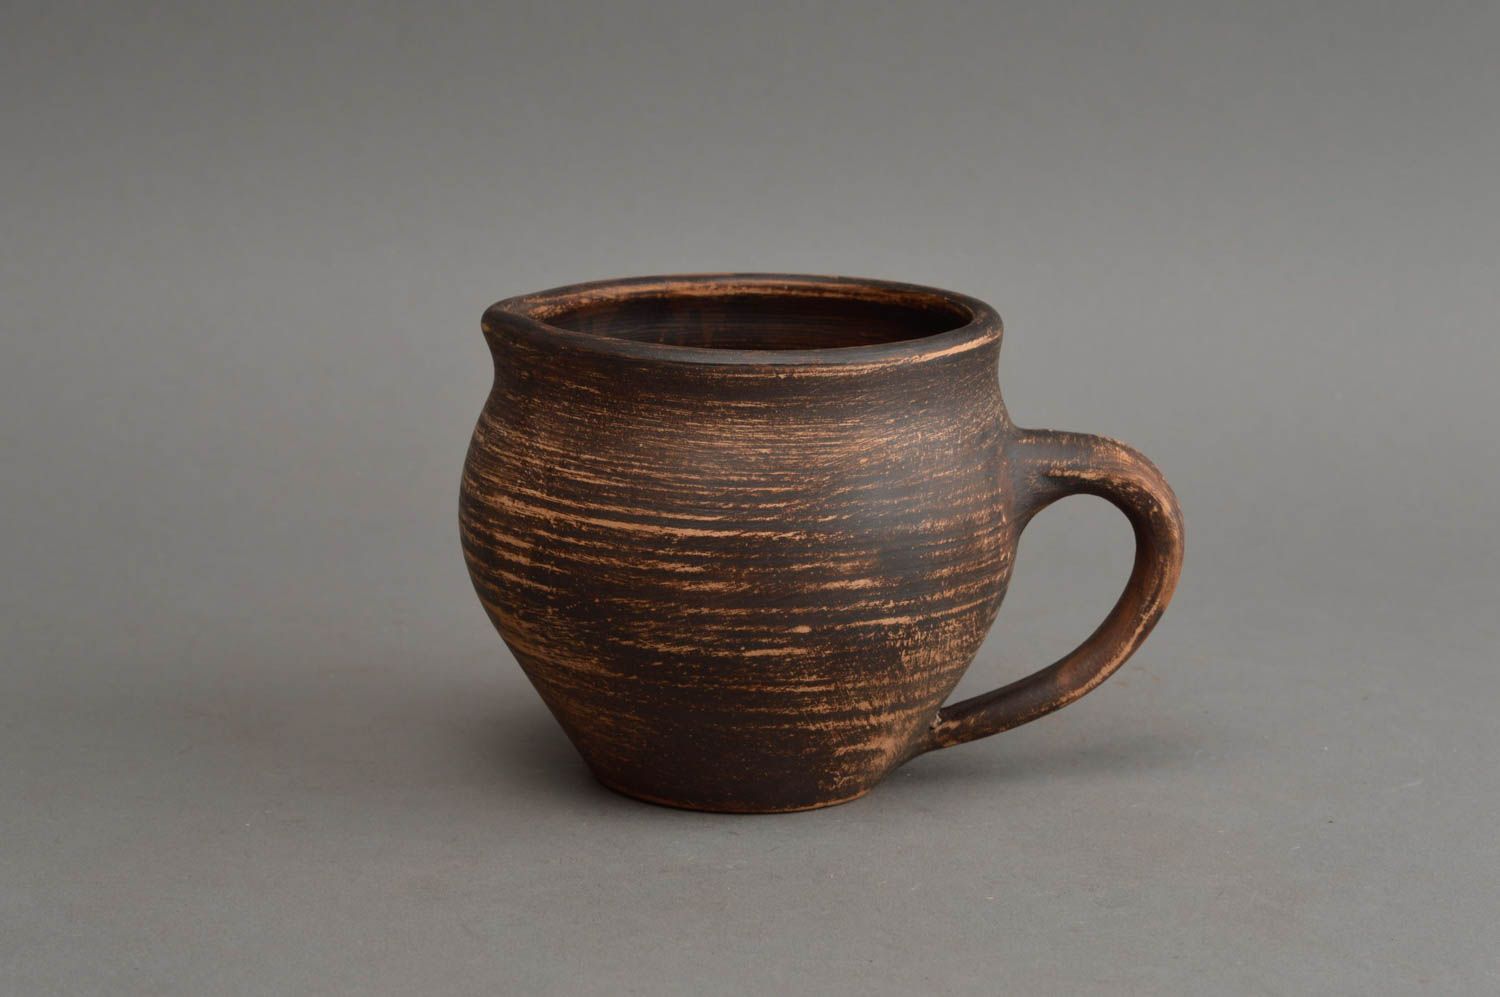 Sauciere Keramik Geschirr handgemacht Ton Behälter im Ethno Stil öko rein   foto 2